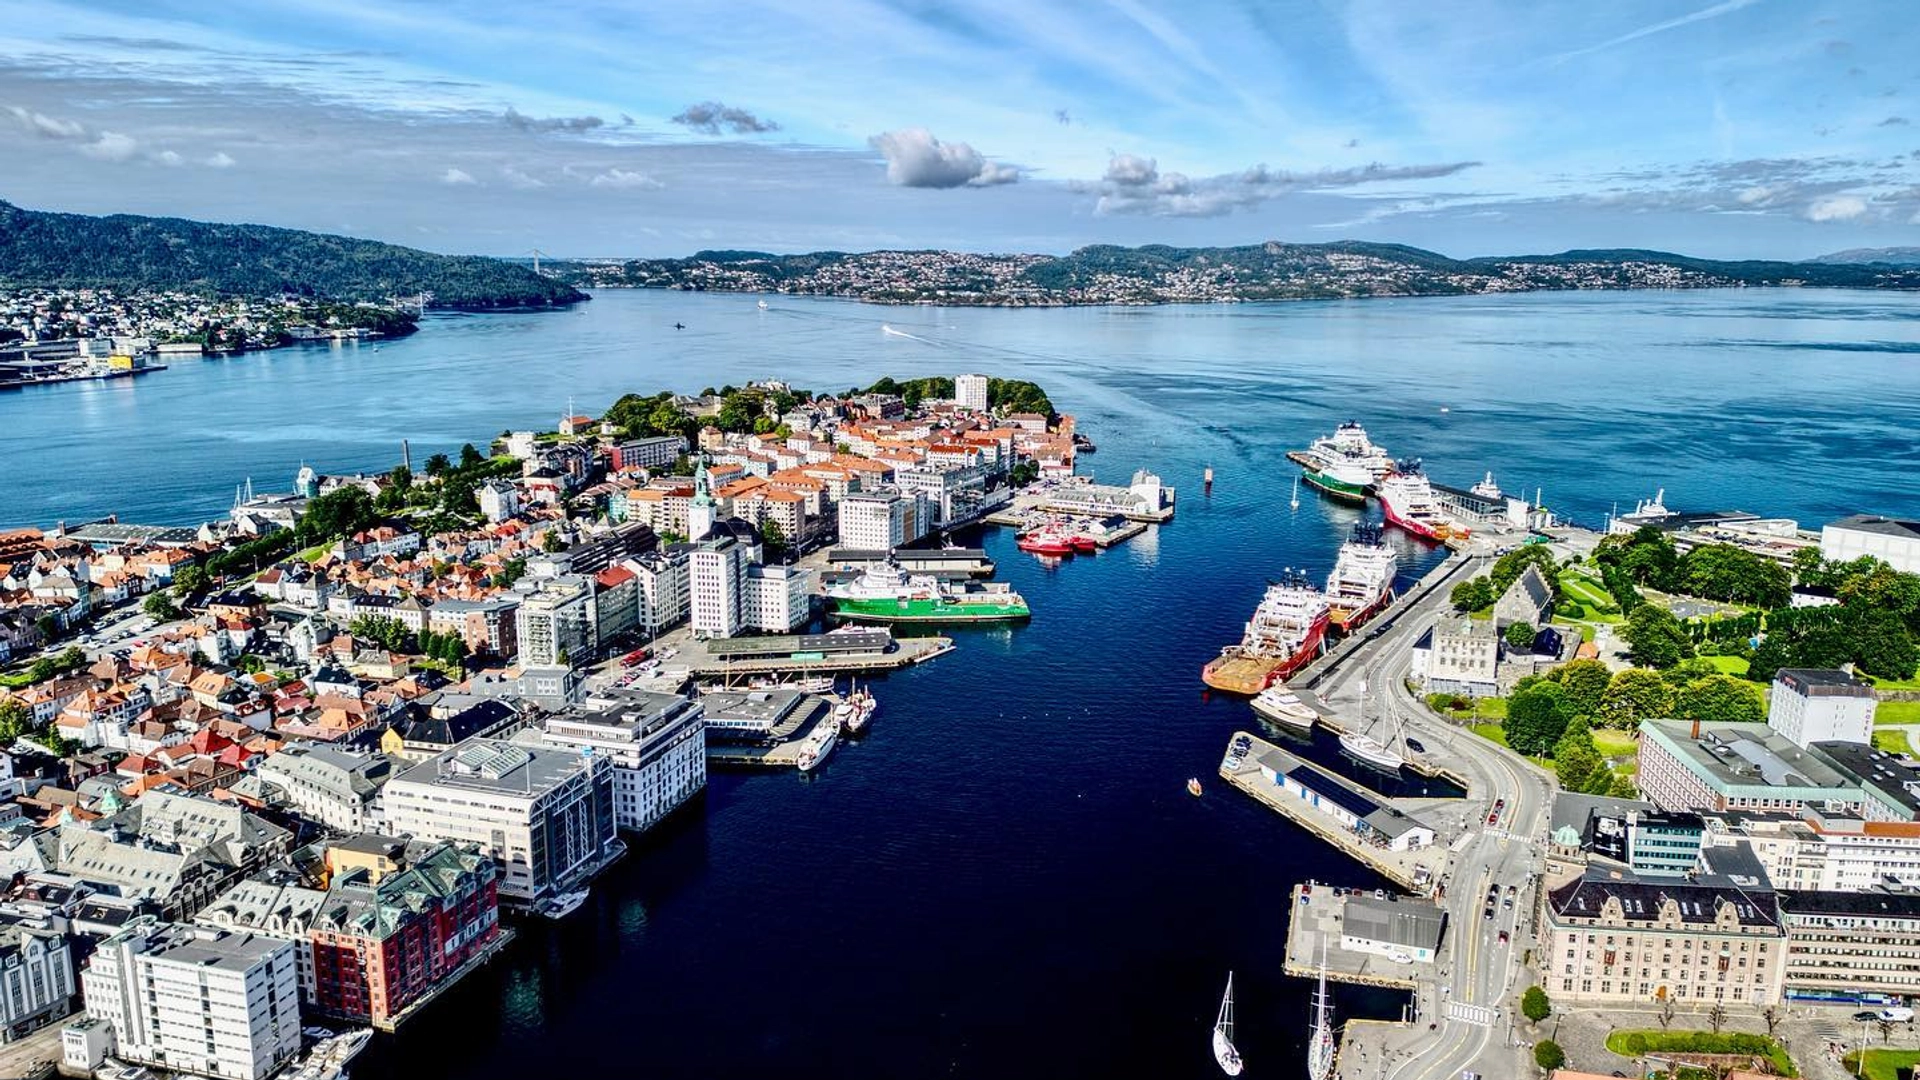 Vågen in Bergen - Norway